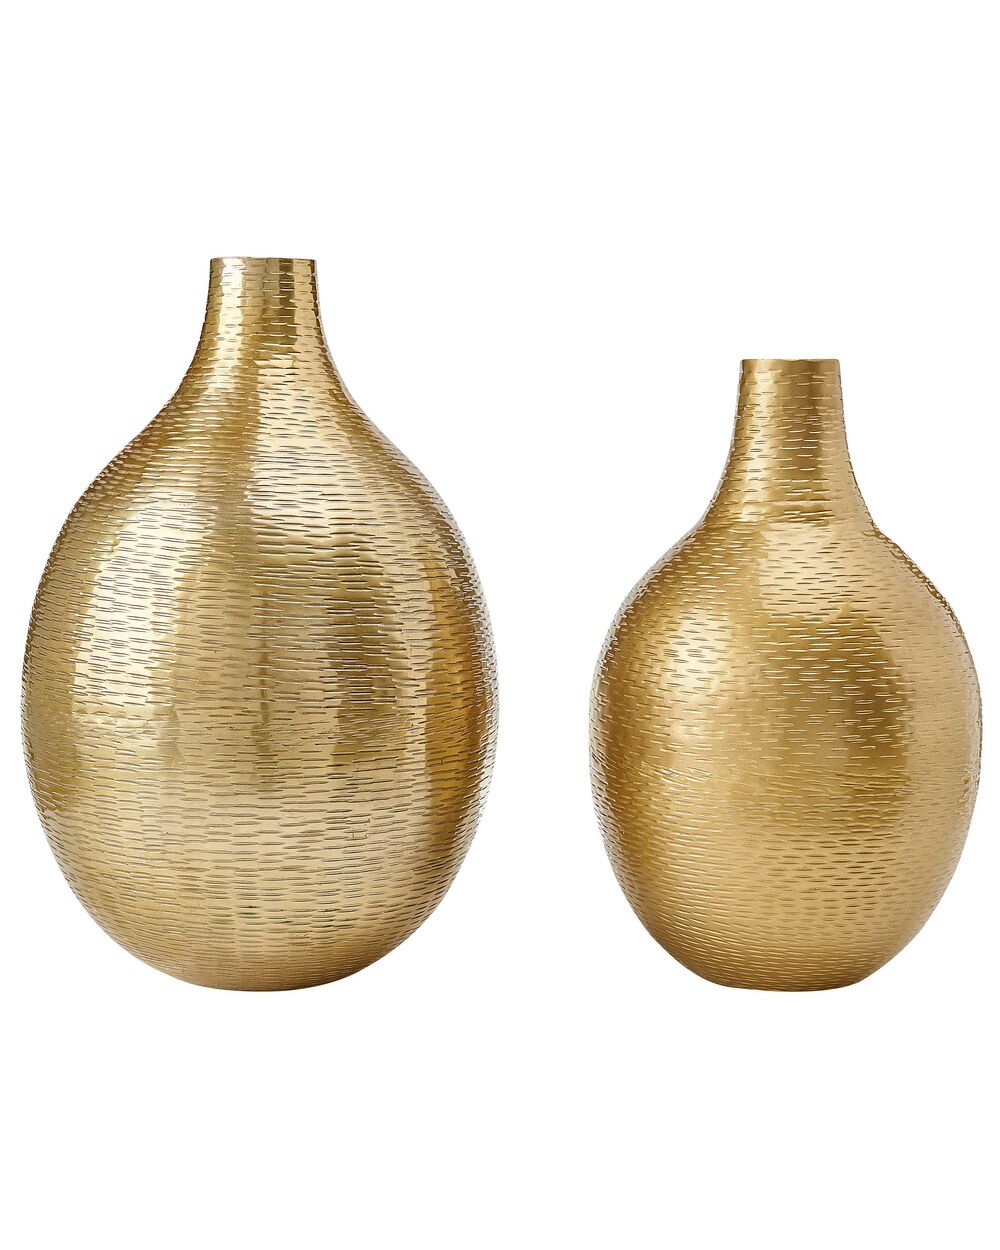 Vaso in ceramica dorato, h 28 cm